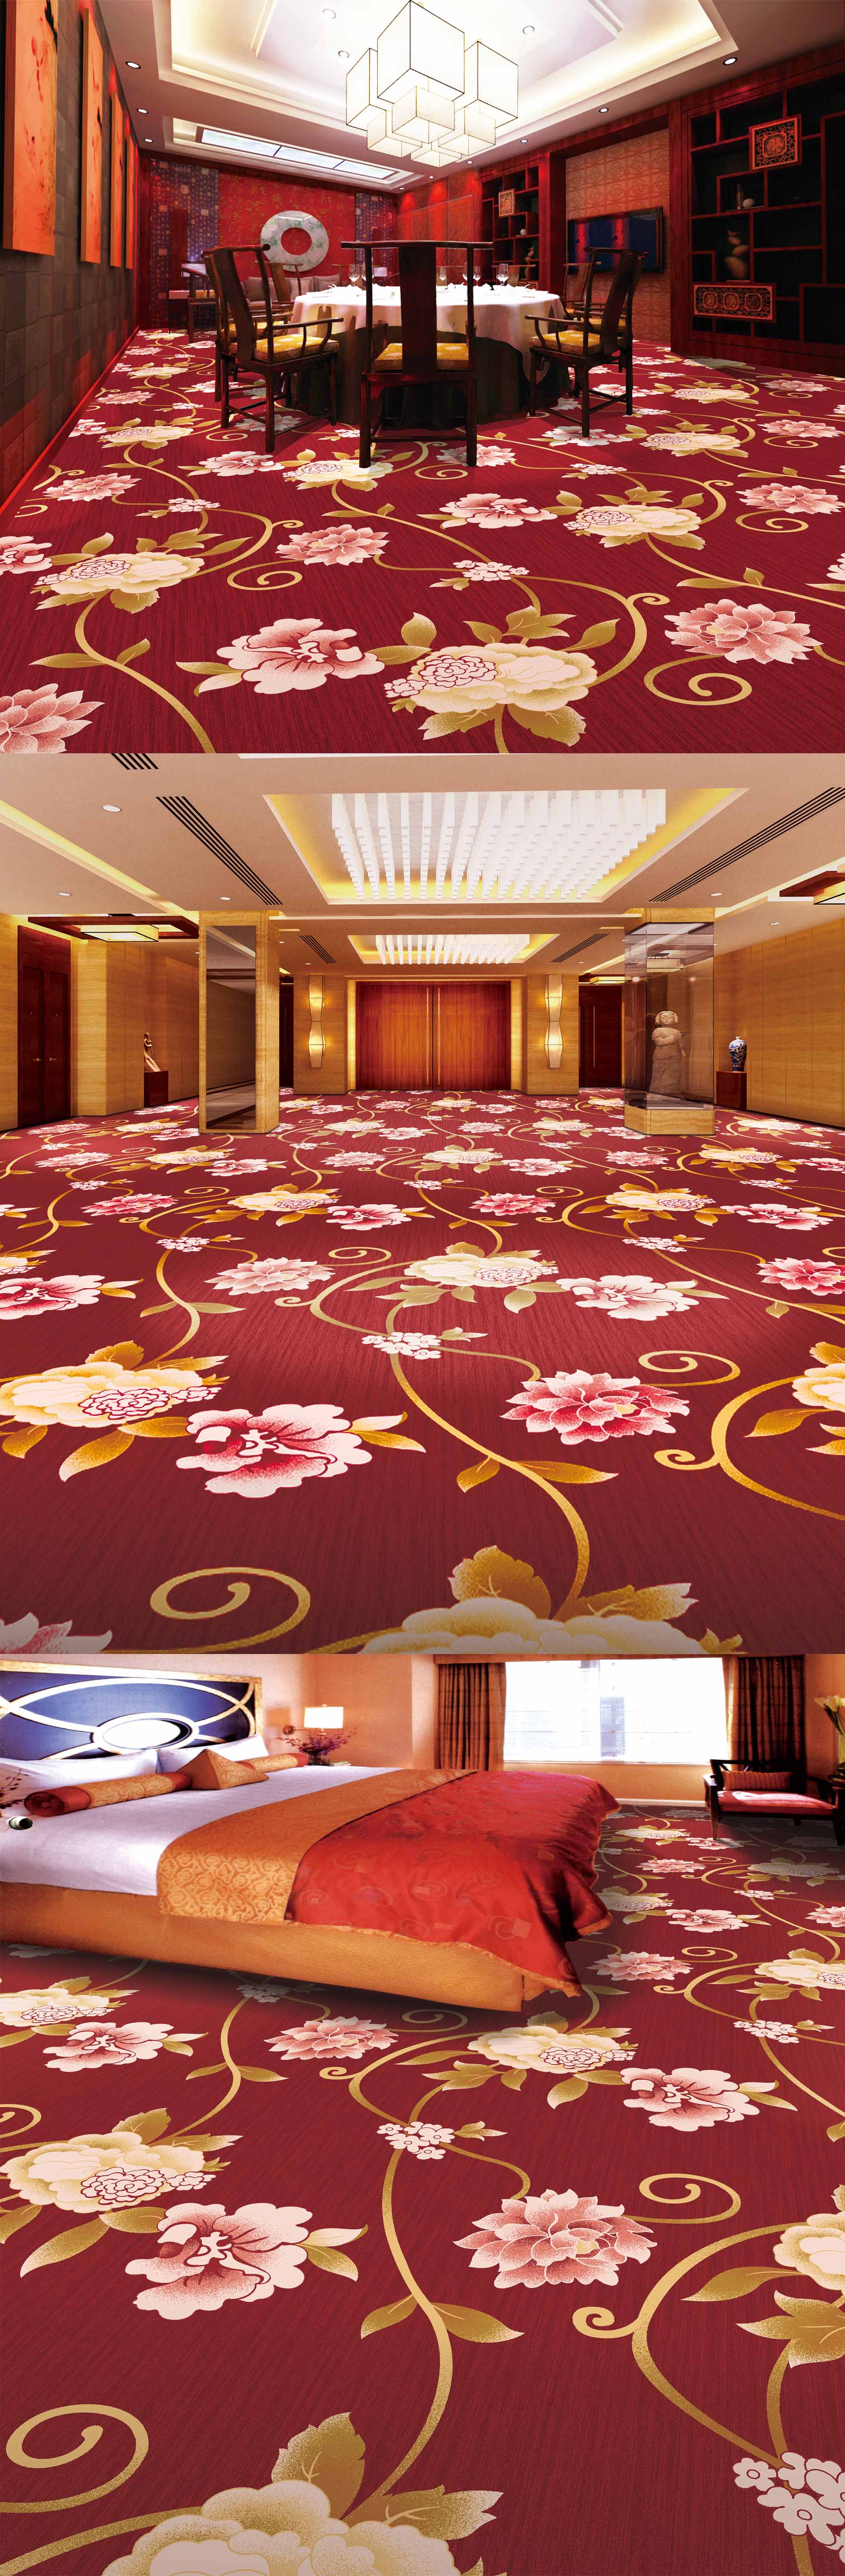 五星大酒店地毯装修效果图 – 设计本装修效果图